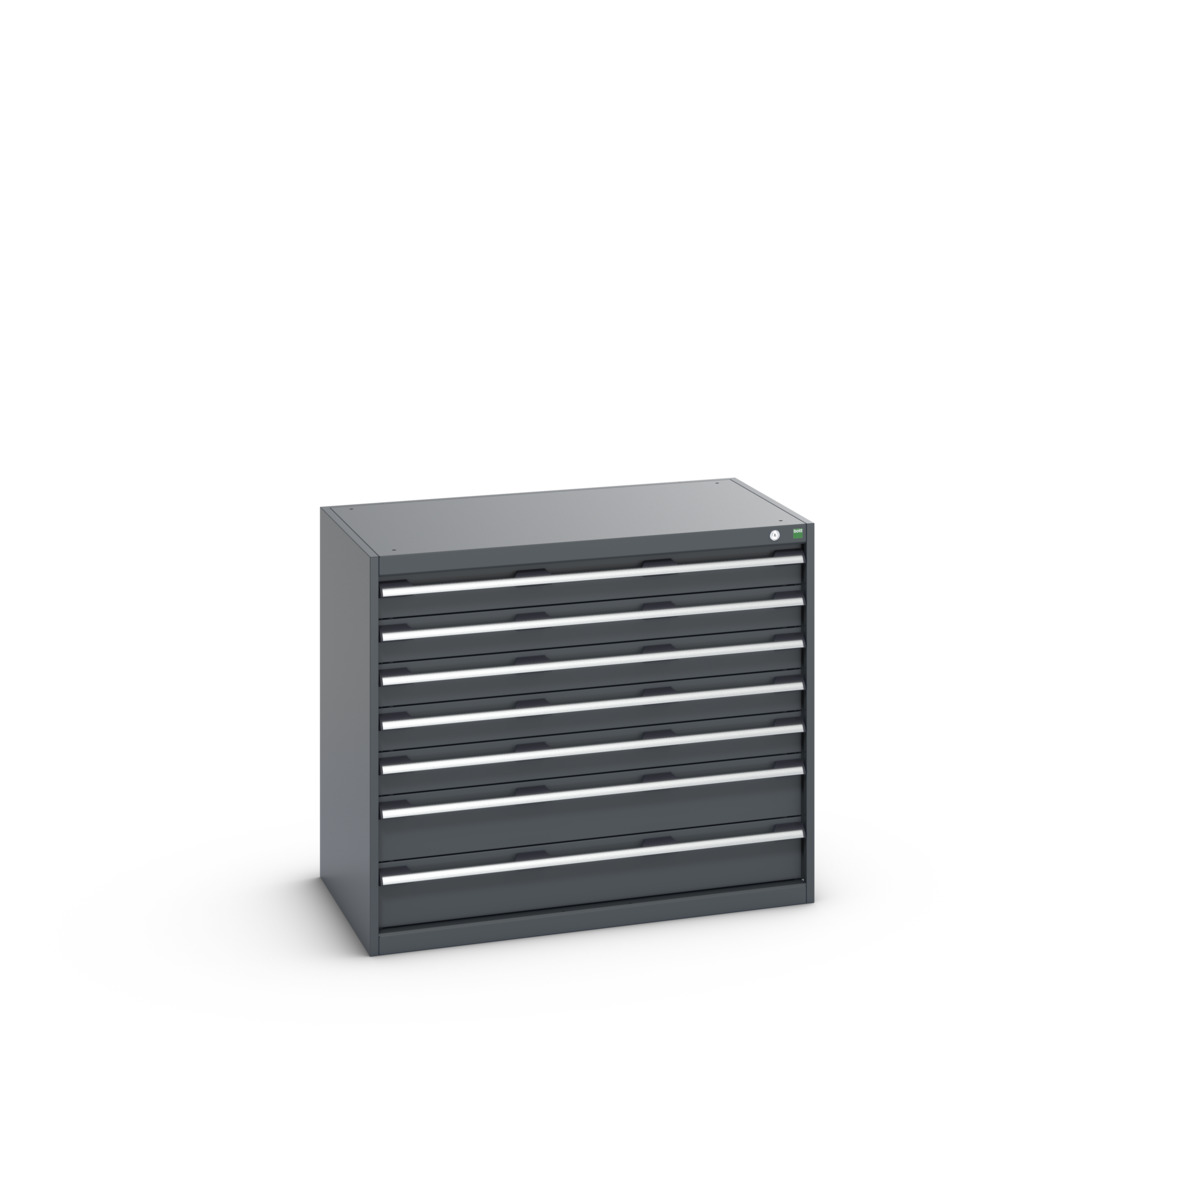 40021021.77V - cubio drawer cabinet